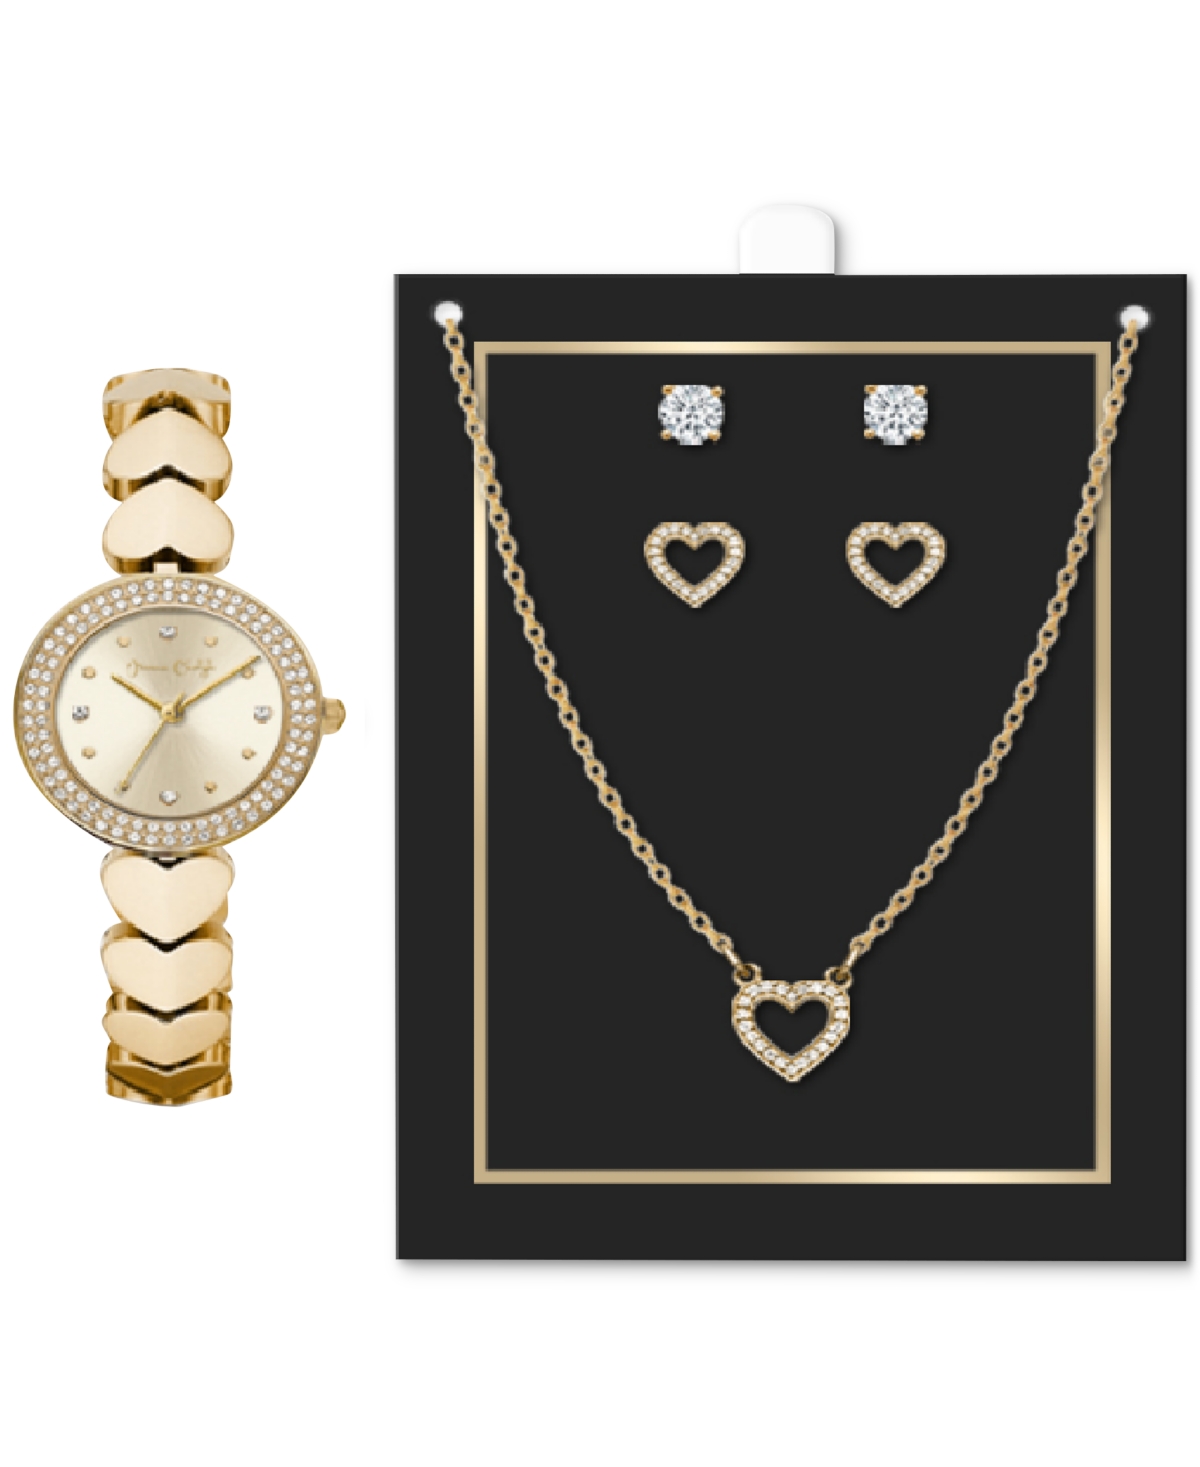 Women's Heart-Link Bracelet Watch 28mm Jewelry Gift Set - Gold